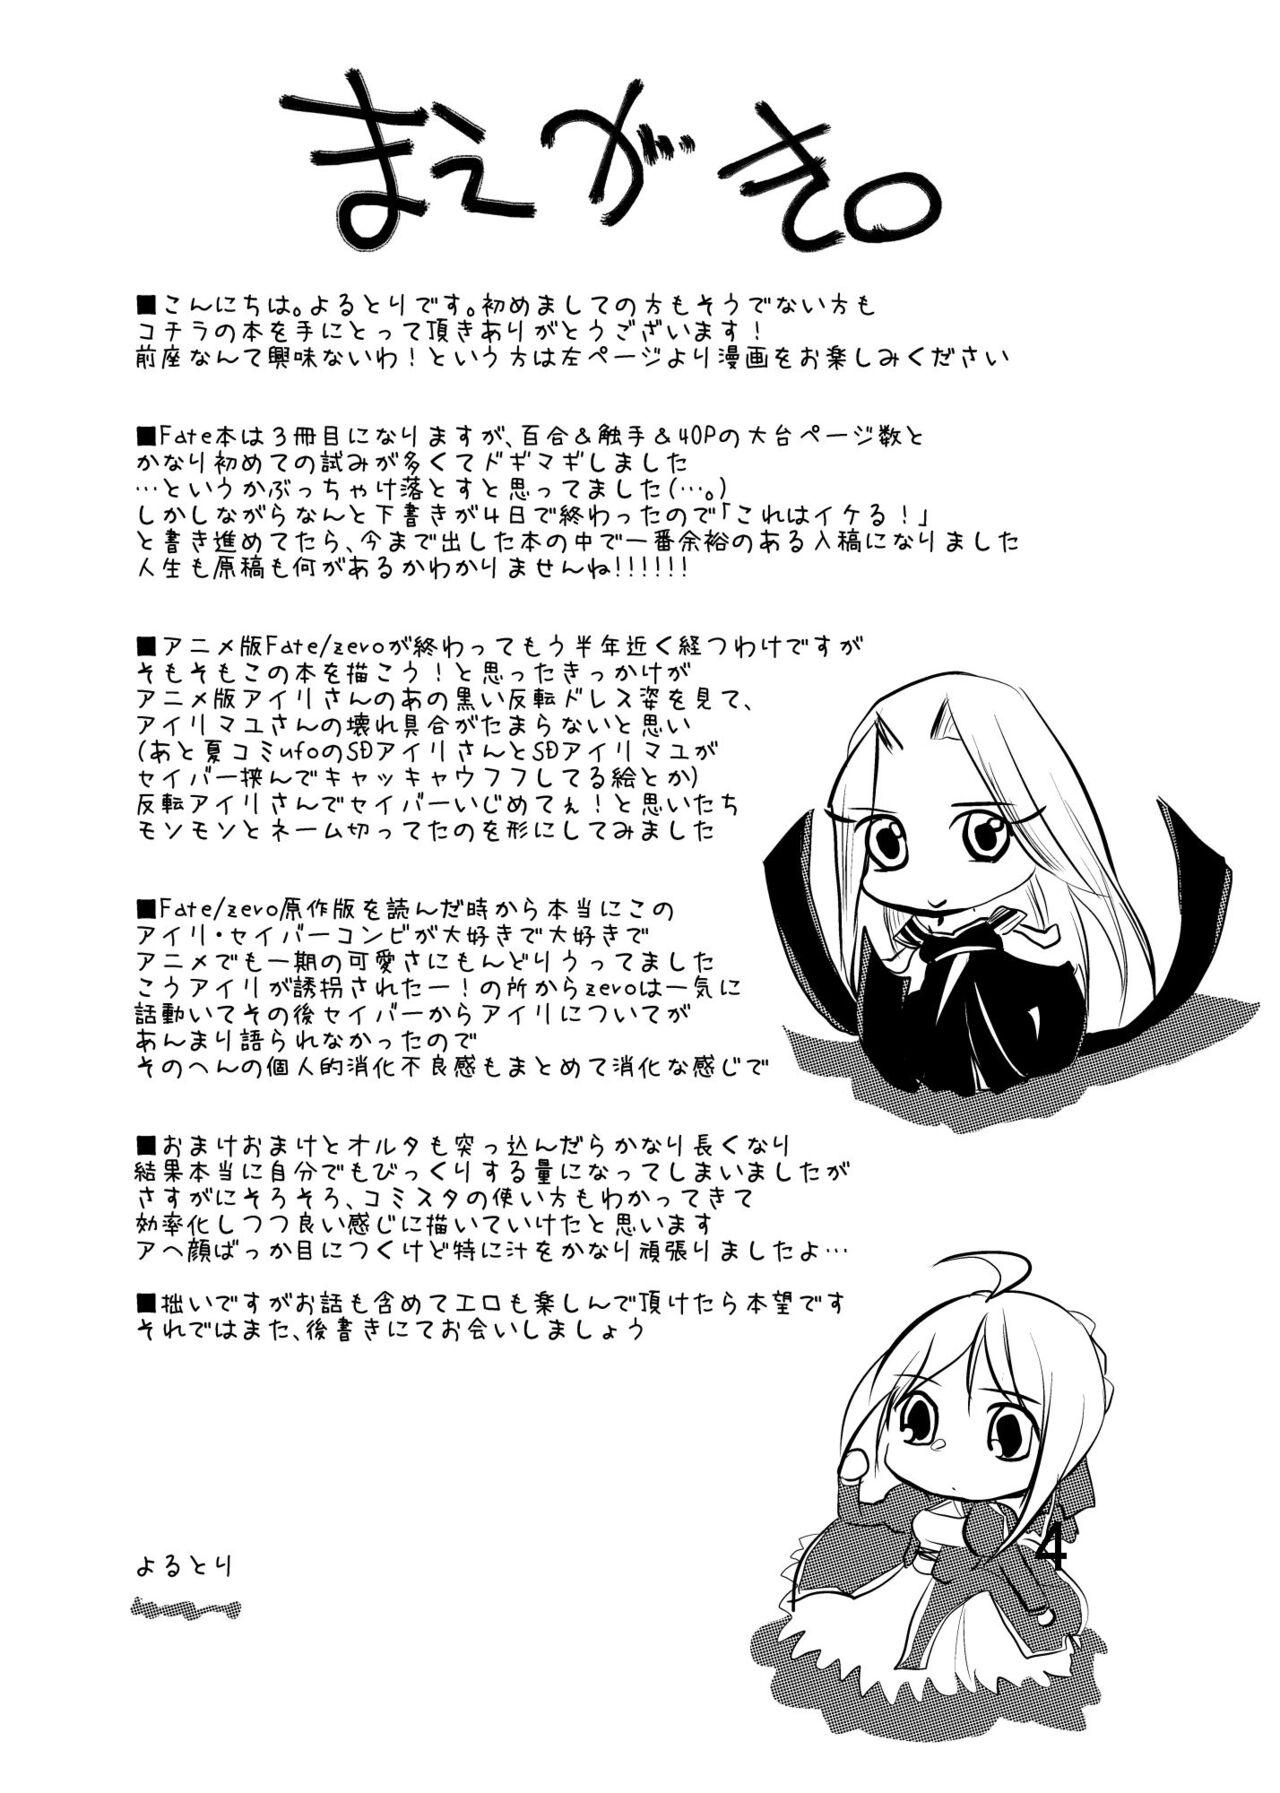 White Daraku no Hana - Fate zero Cams - Page 3